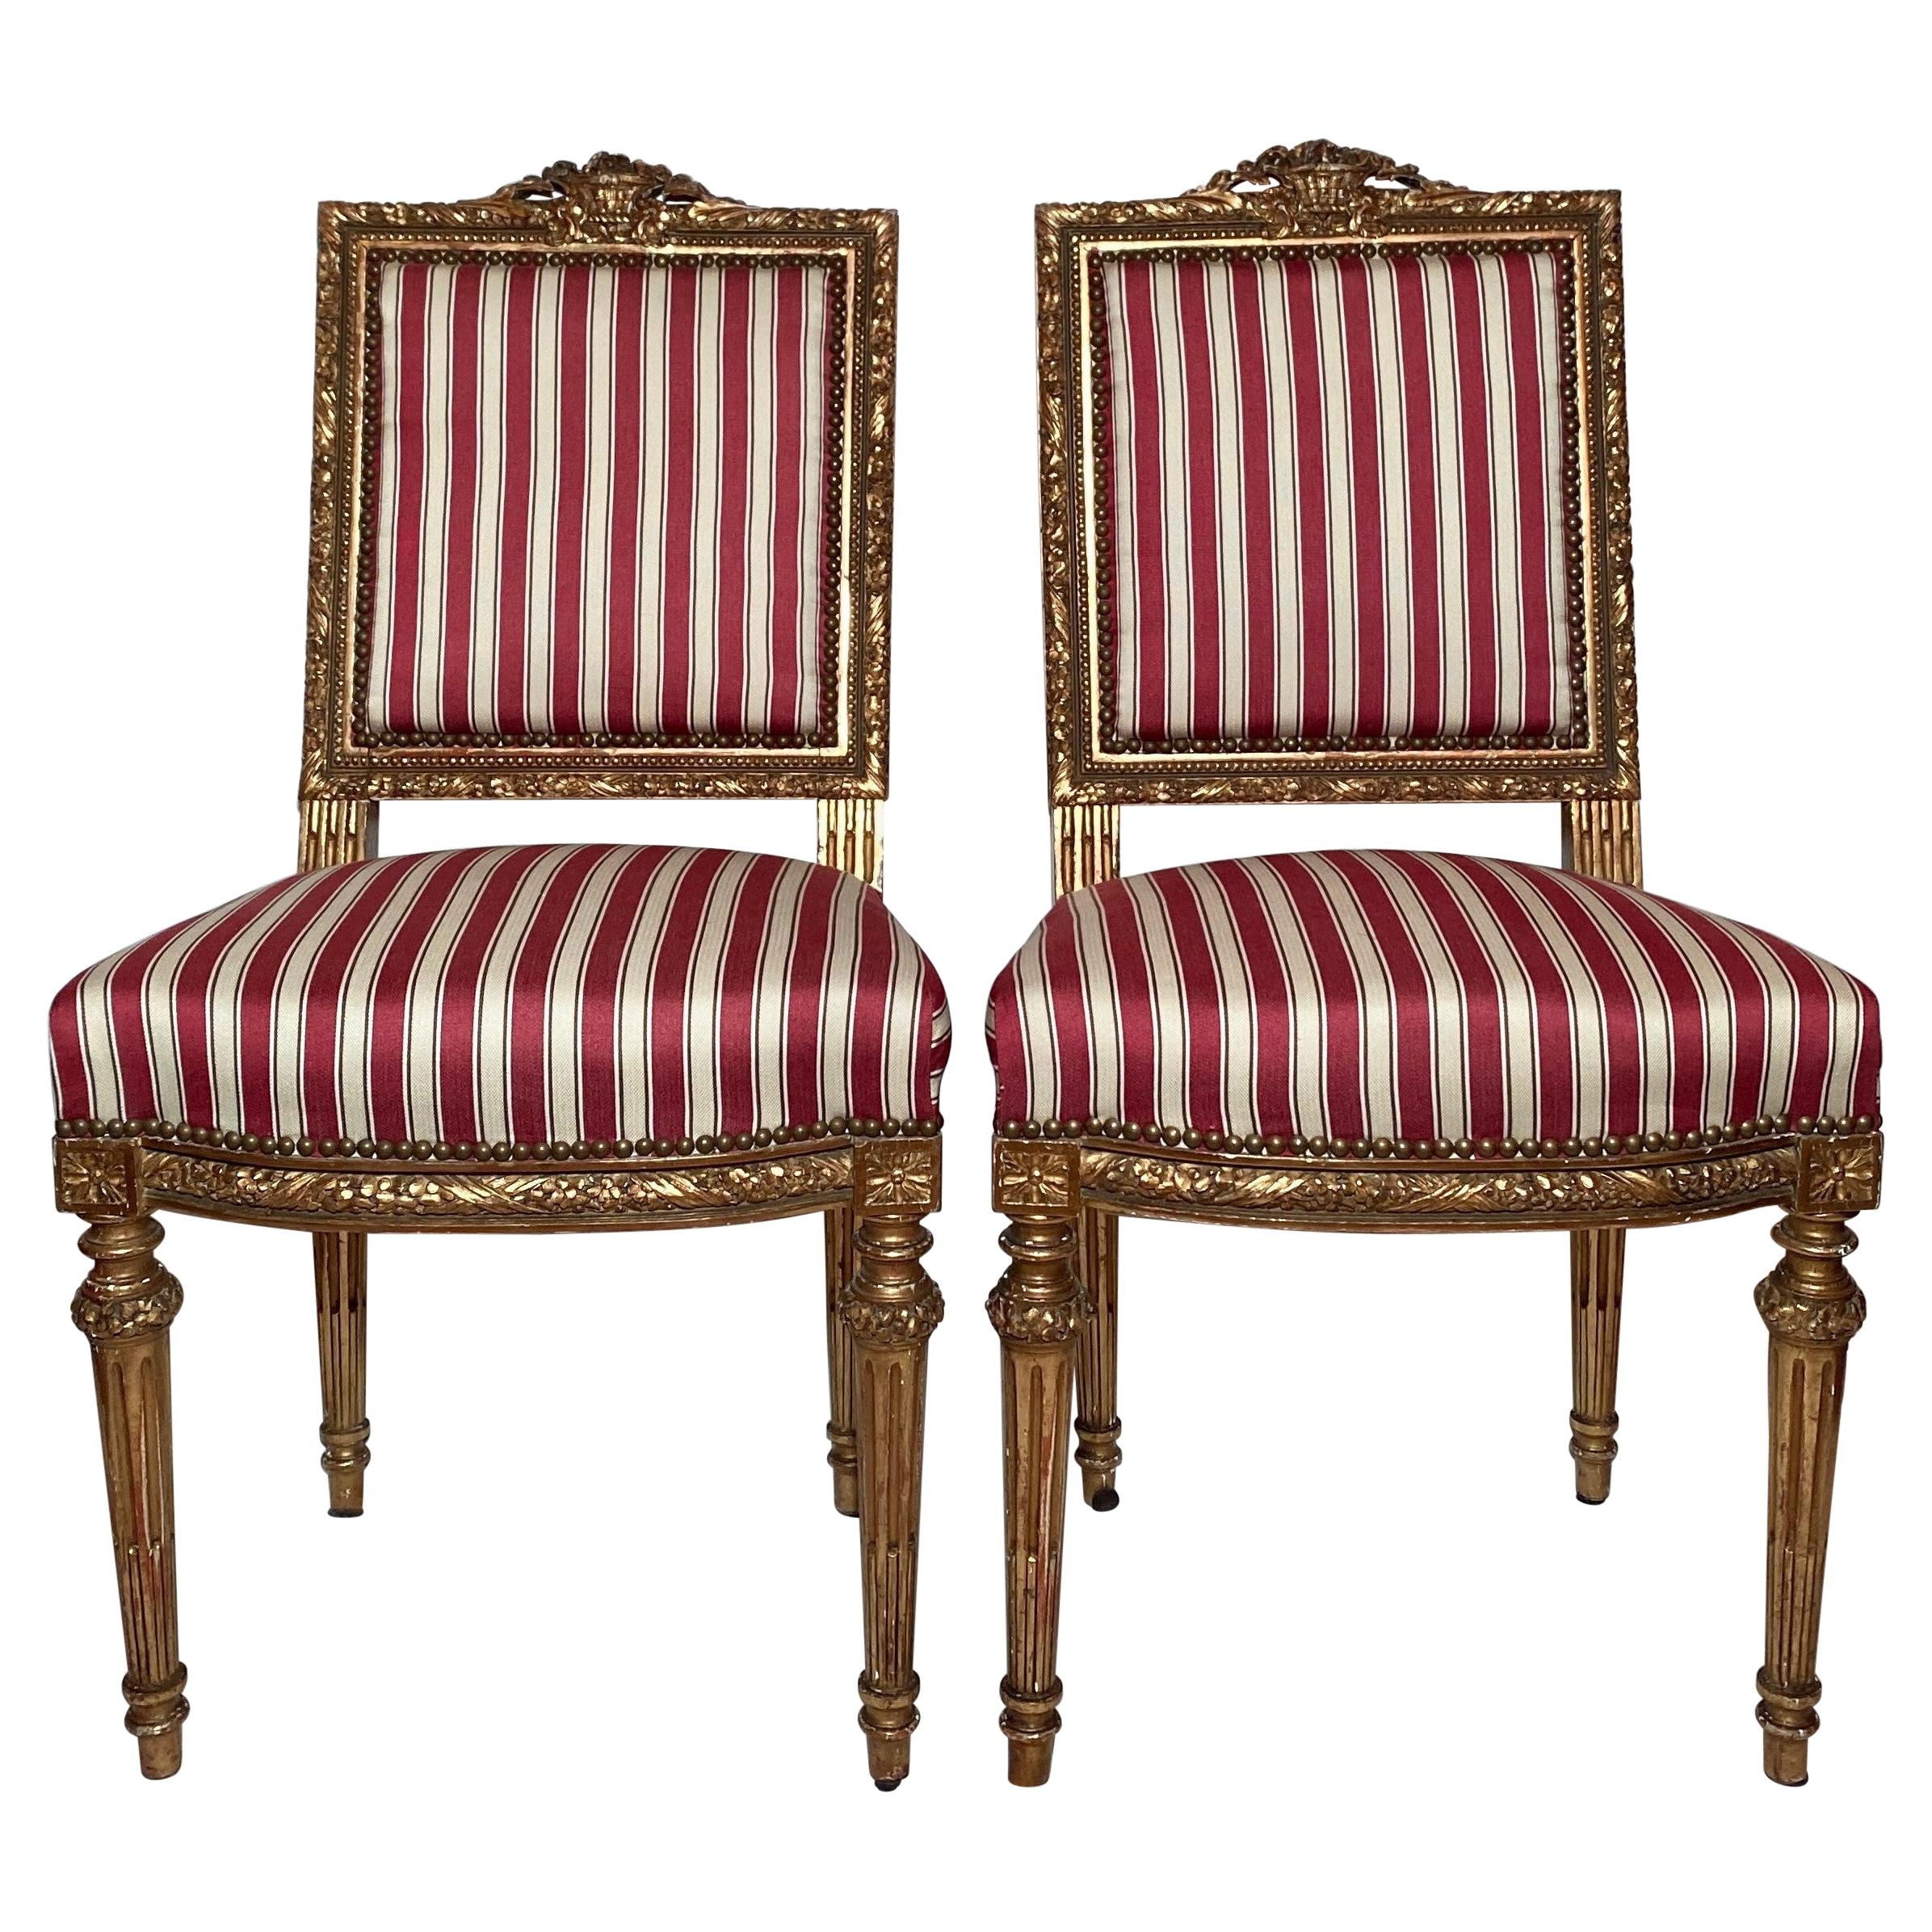 Paire d'anciennes chaises d'appoint Napoléon III françaises du XIXe siècle, en bois sculpté et doré